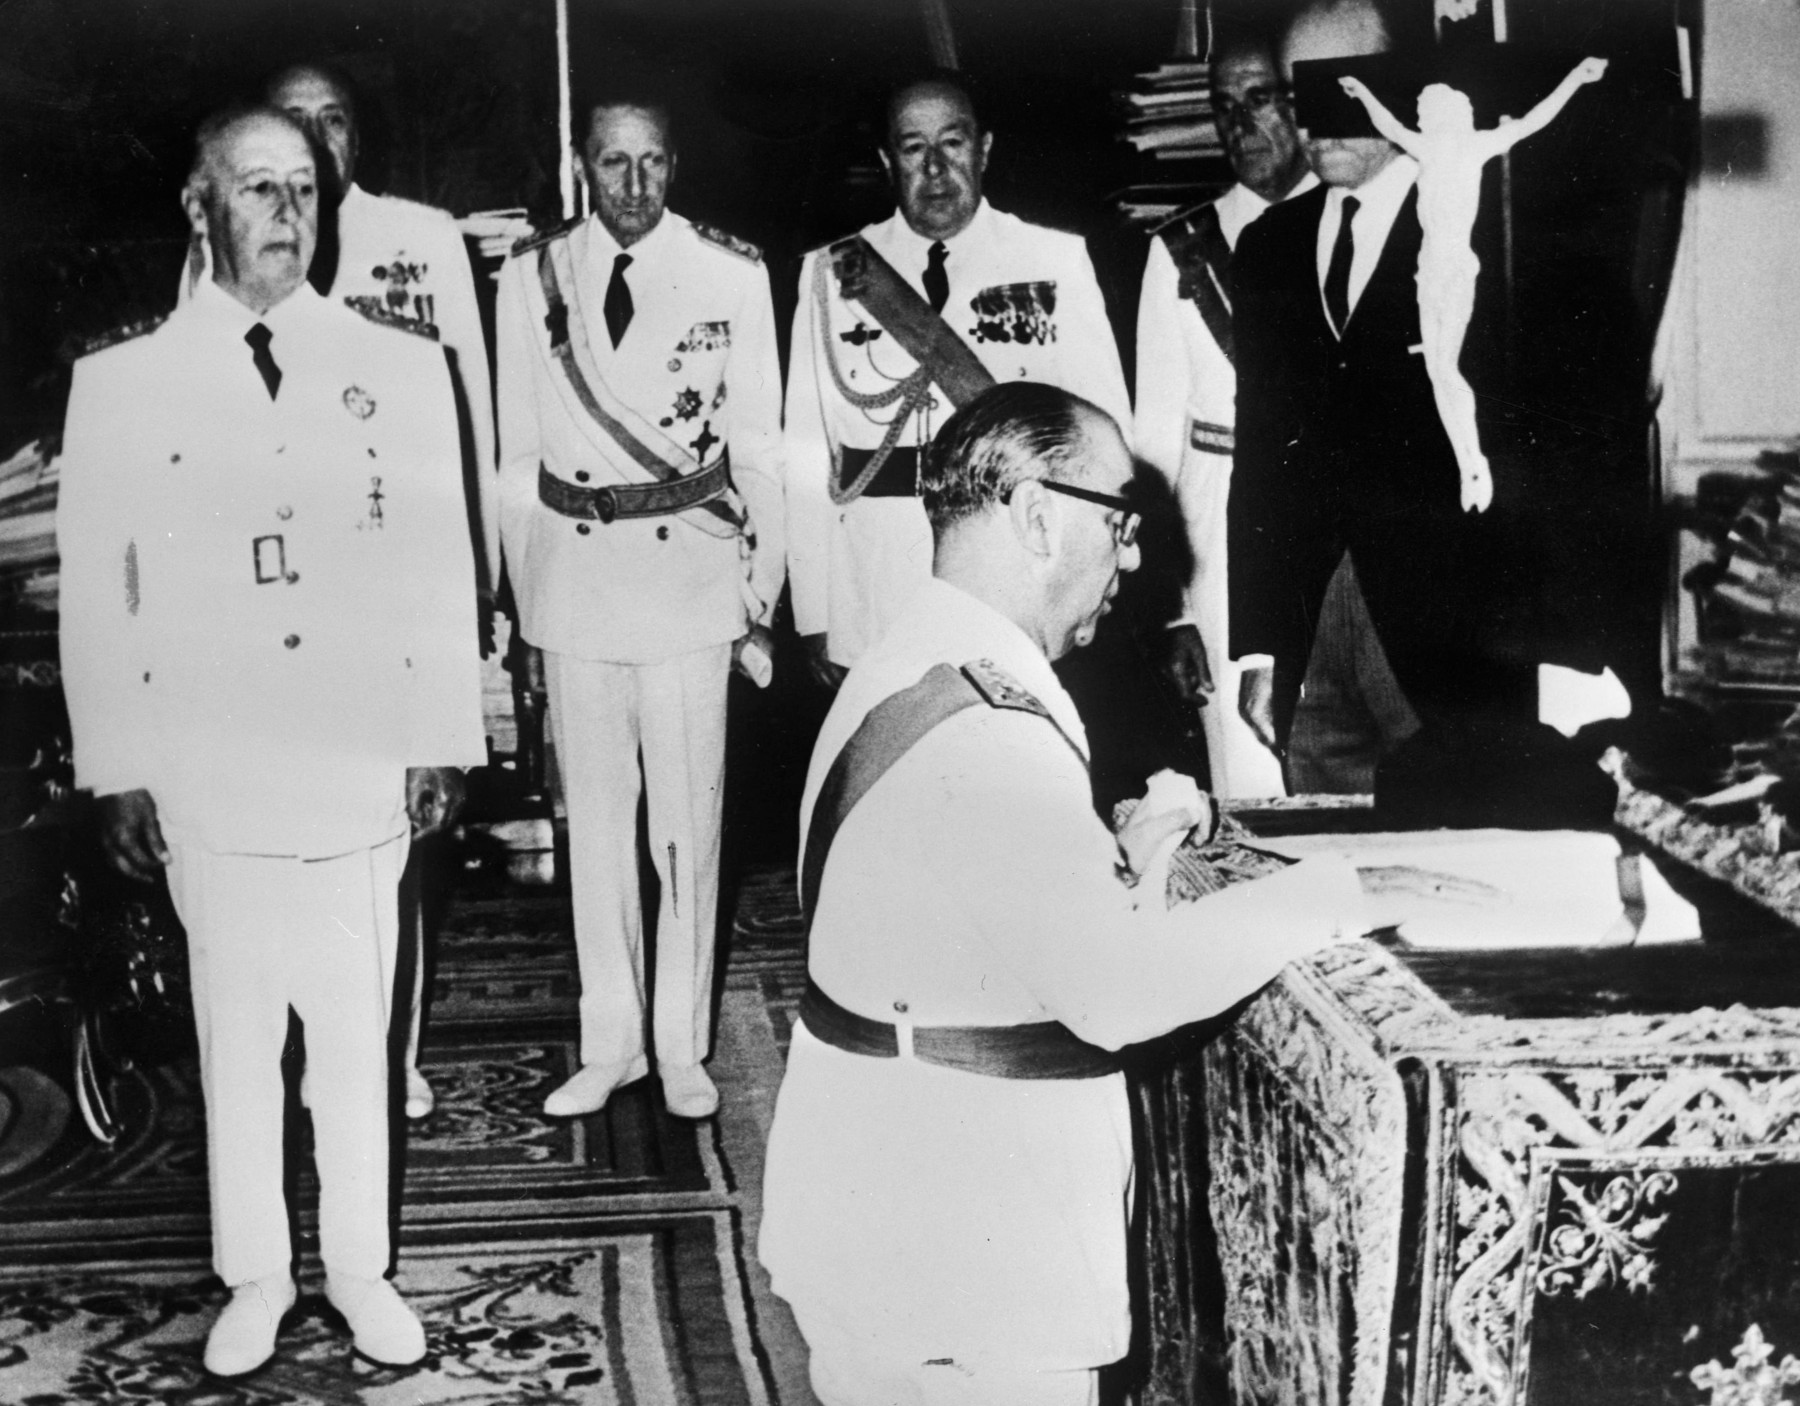 El Presidente del Gobierno Luis Carrero Blanco de España durante su ceremonia de juramento junto al General Franco 20-12-1973. Colección Anefo.